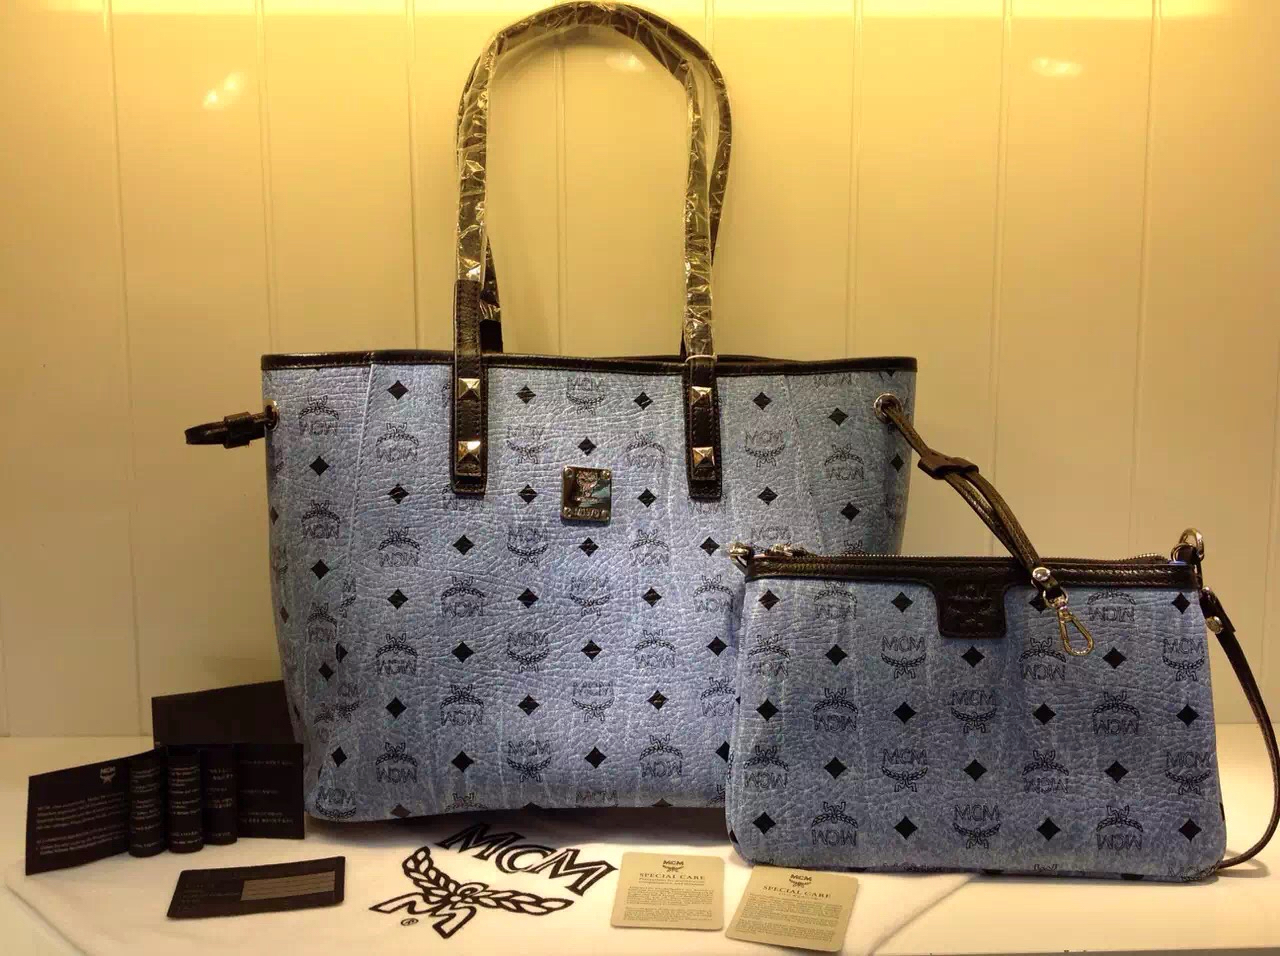 广州MCM 专柜款式推荐 子母购物袋 水洗蓝时尚包包 一件代发